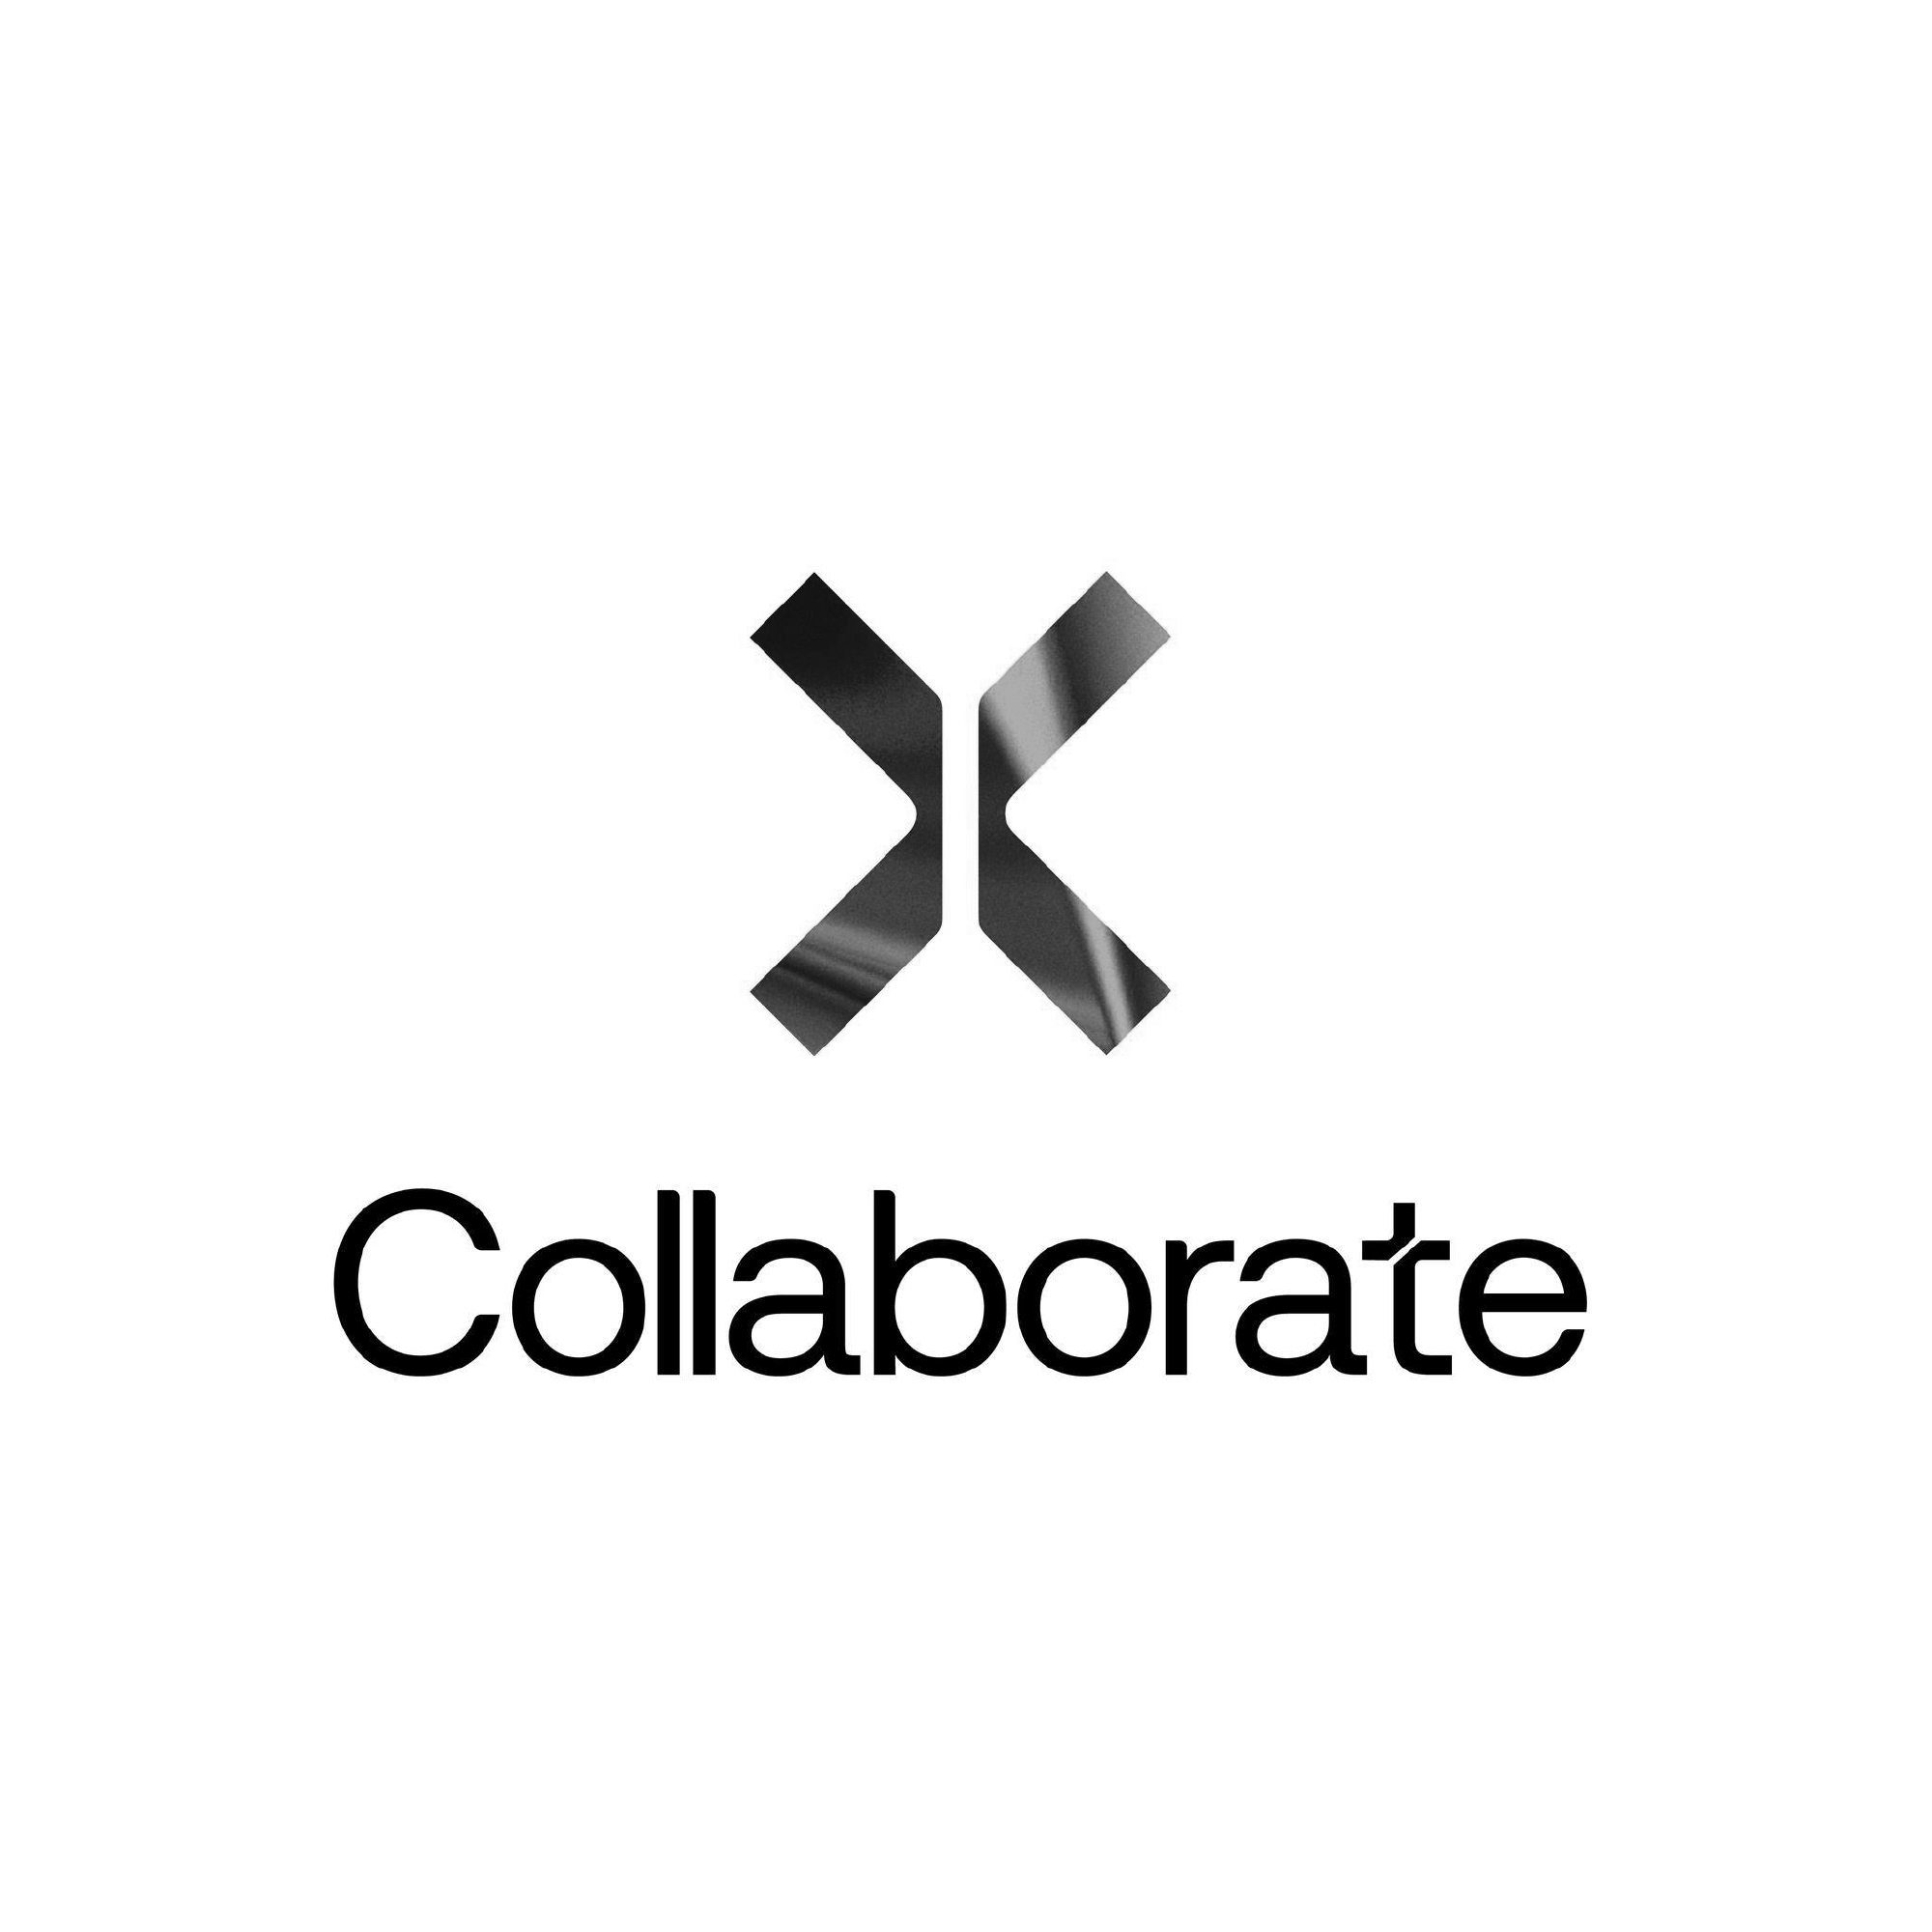 Collaborate (Copy)